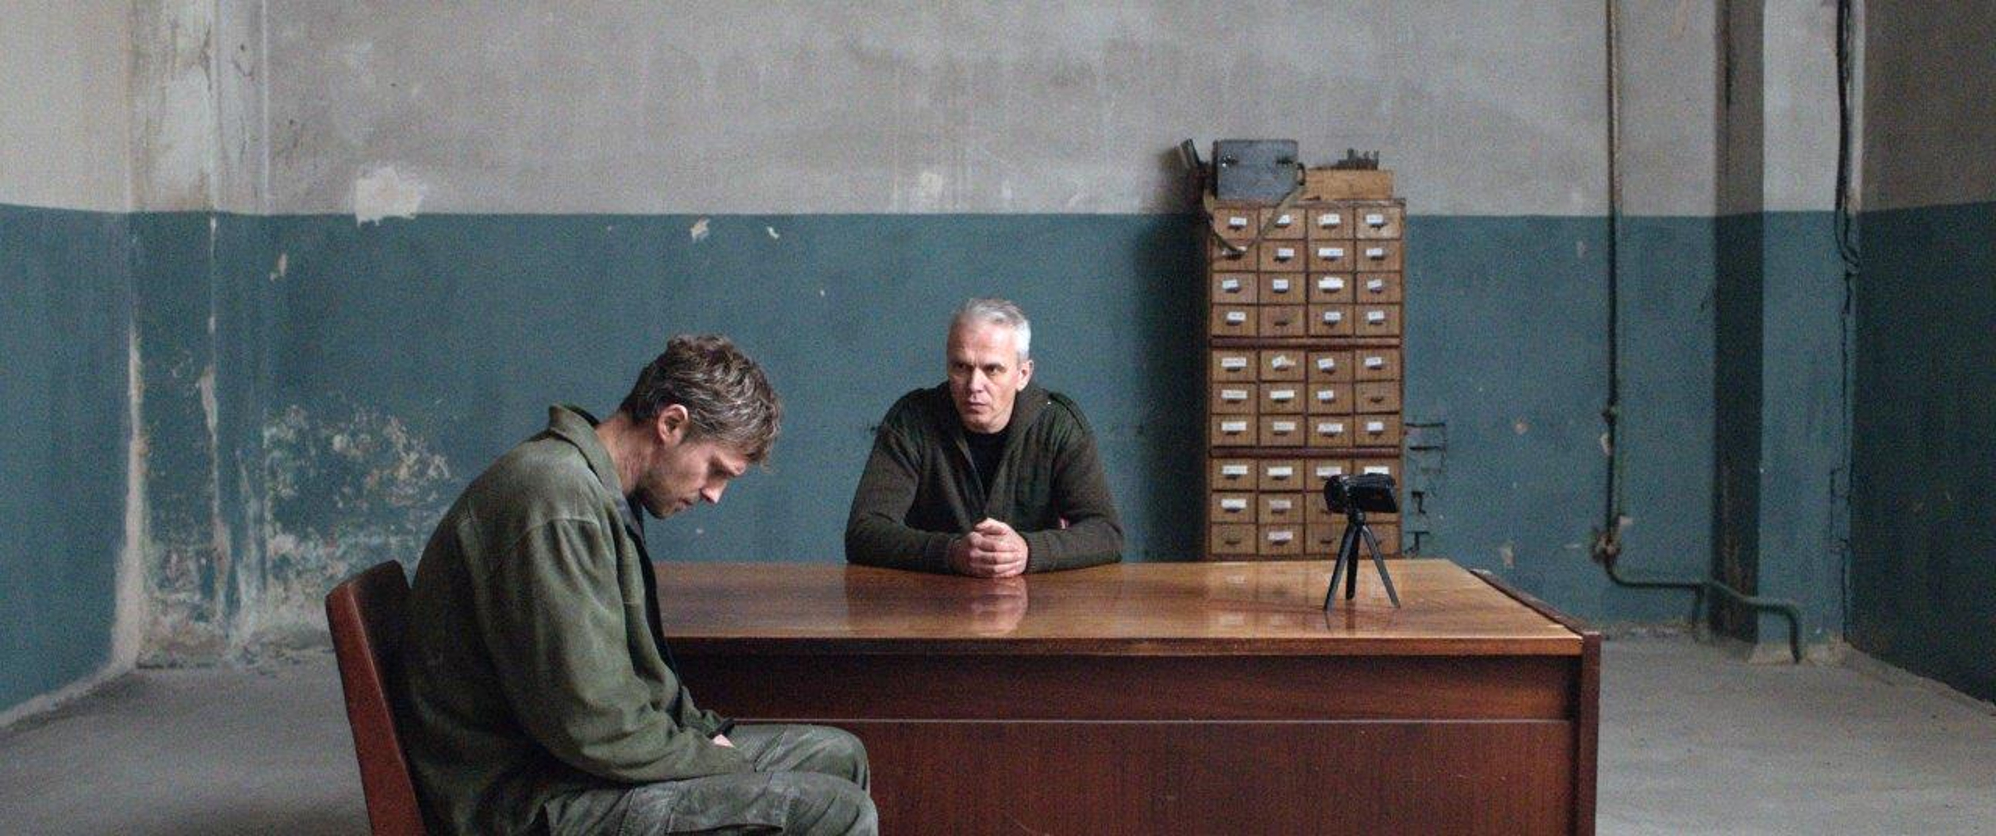 "Reflection", proiettato in solidarietà con il popolo ucraino il film di Vasjanovyč